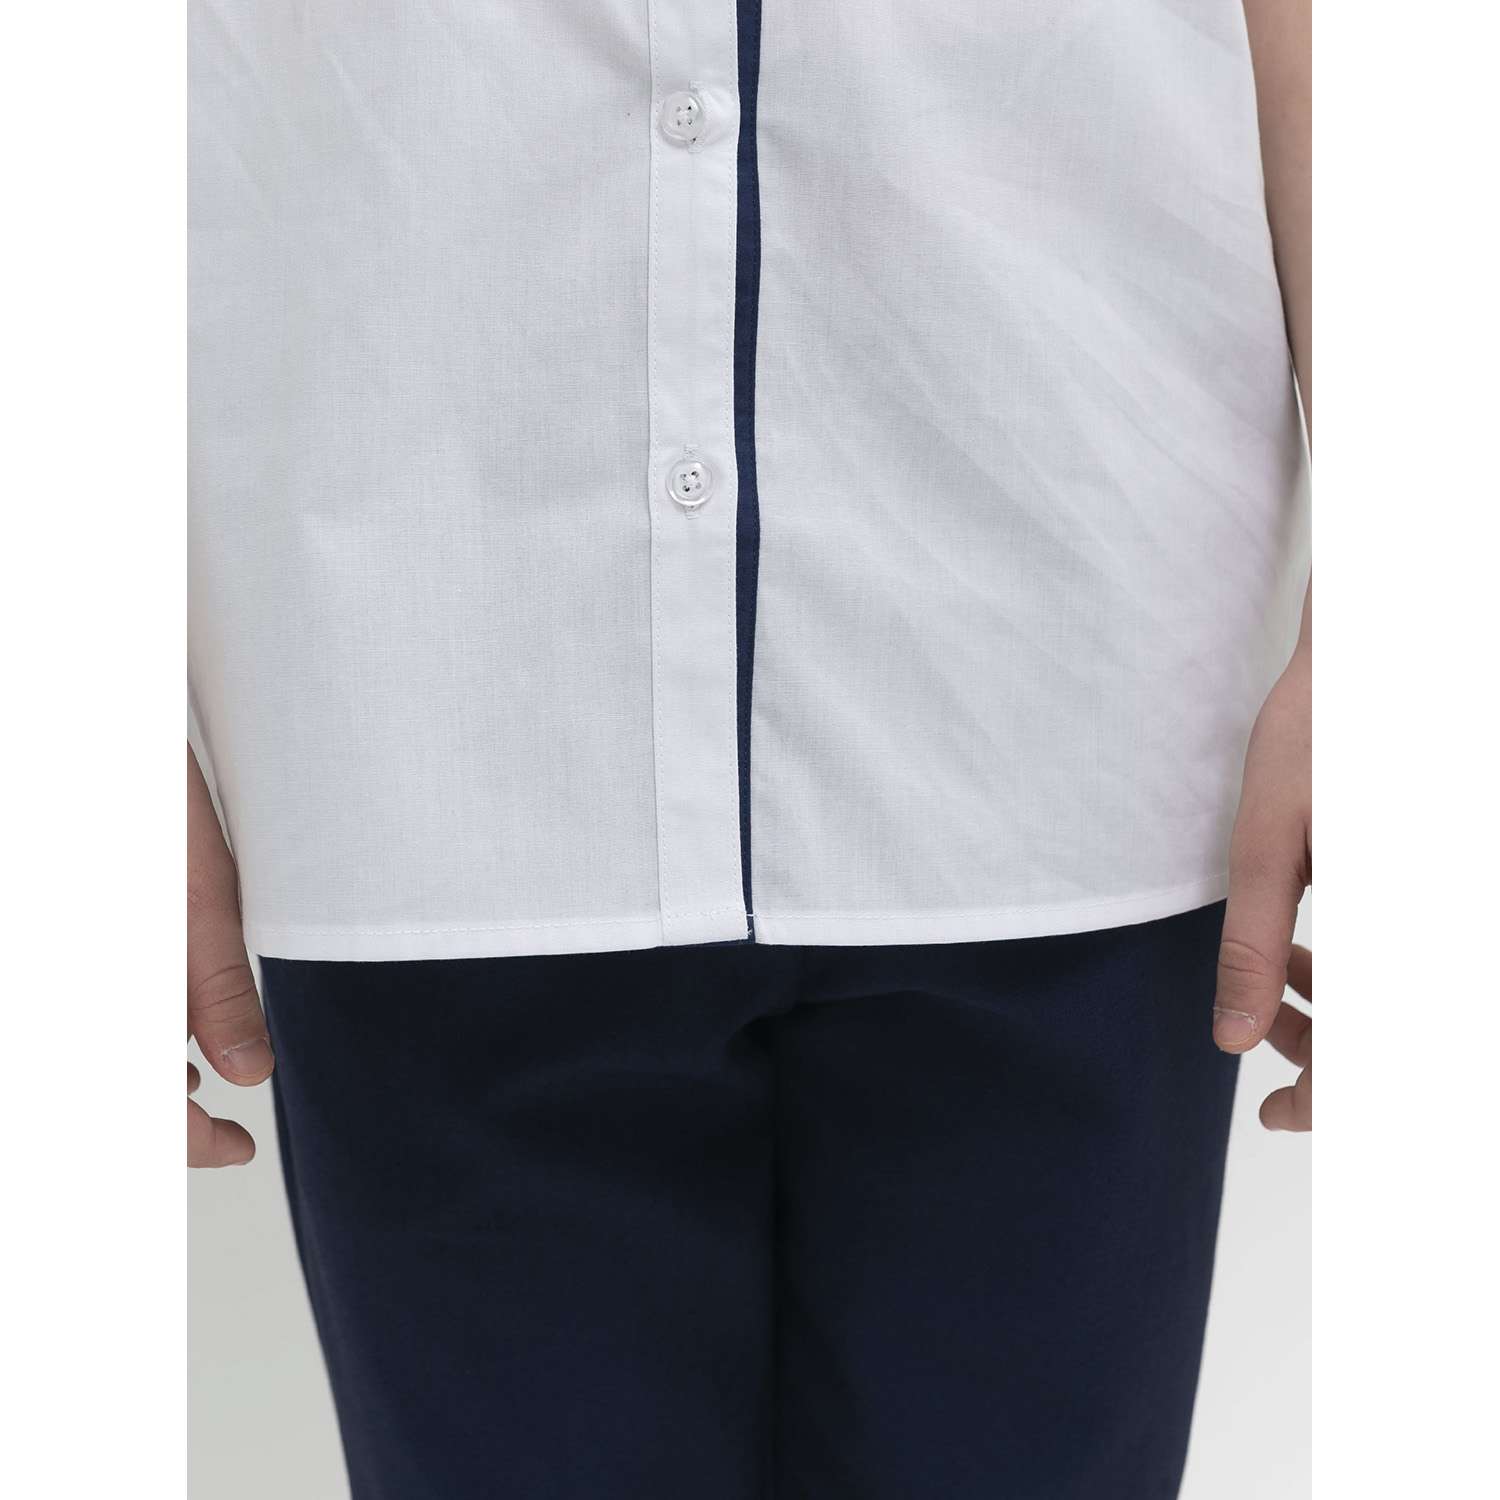 Рубашка PELICAN GWCT7123/Белый(2) - фото 3